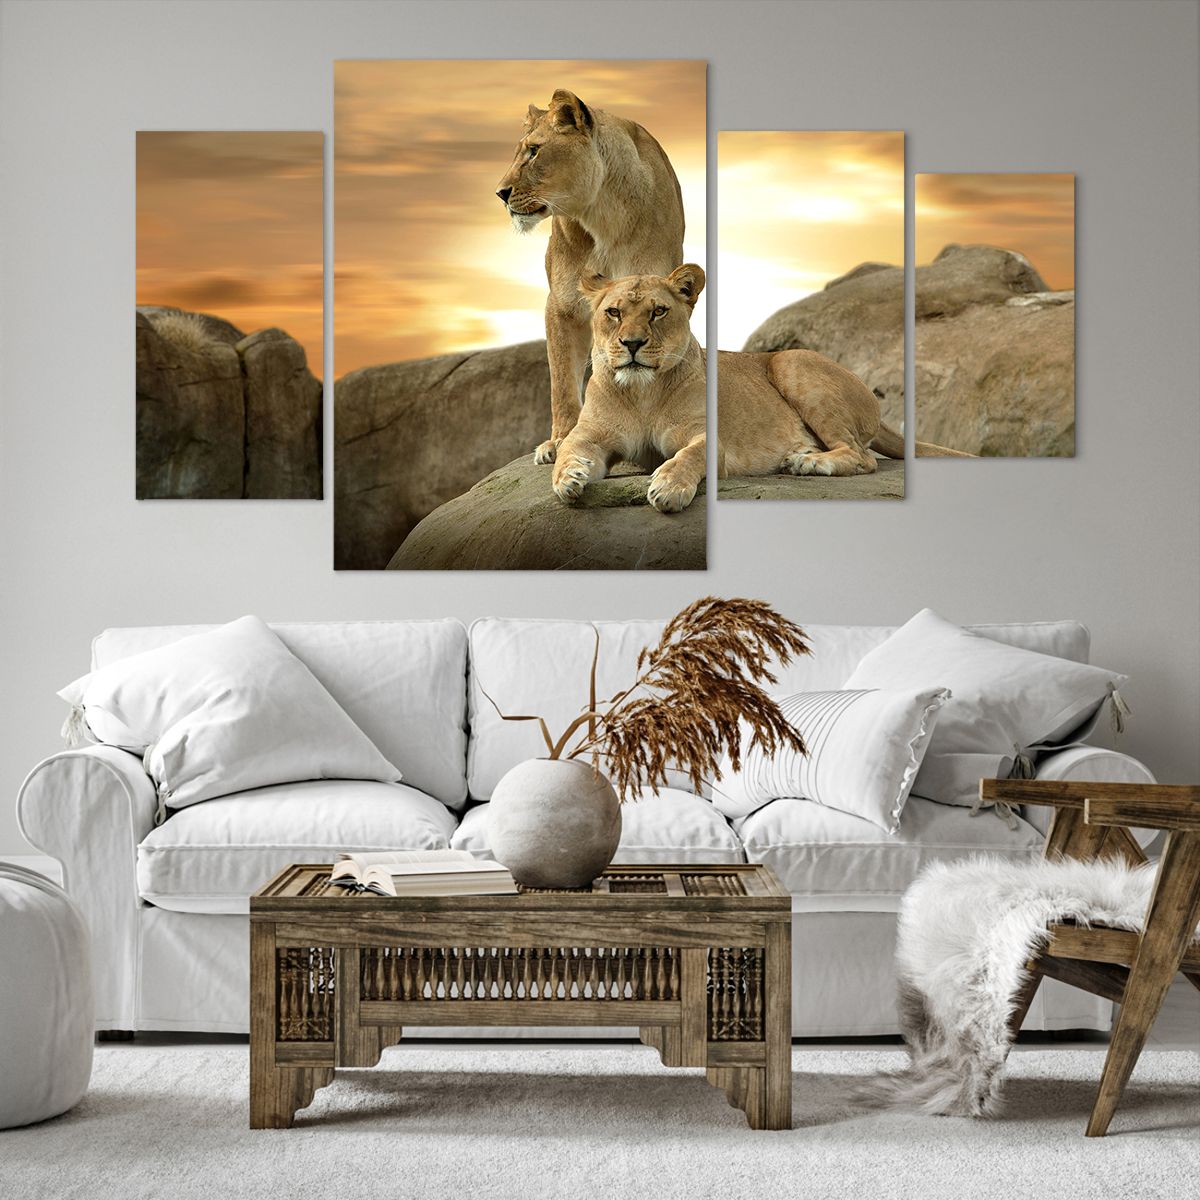 Obrazy na płótnie Zwierzęta, Obrazy na płótnie Lew, Obrazy na płótnie Natura, Obrazy na płótnie Krajobraz, Obrazy na płótnie Afryka